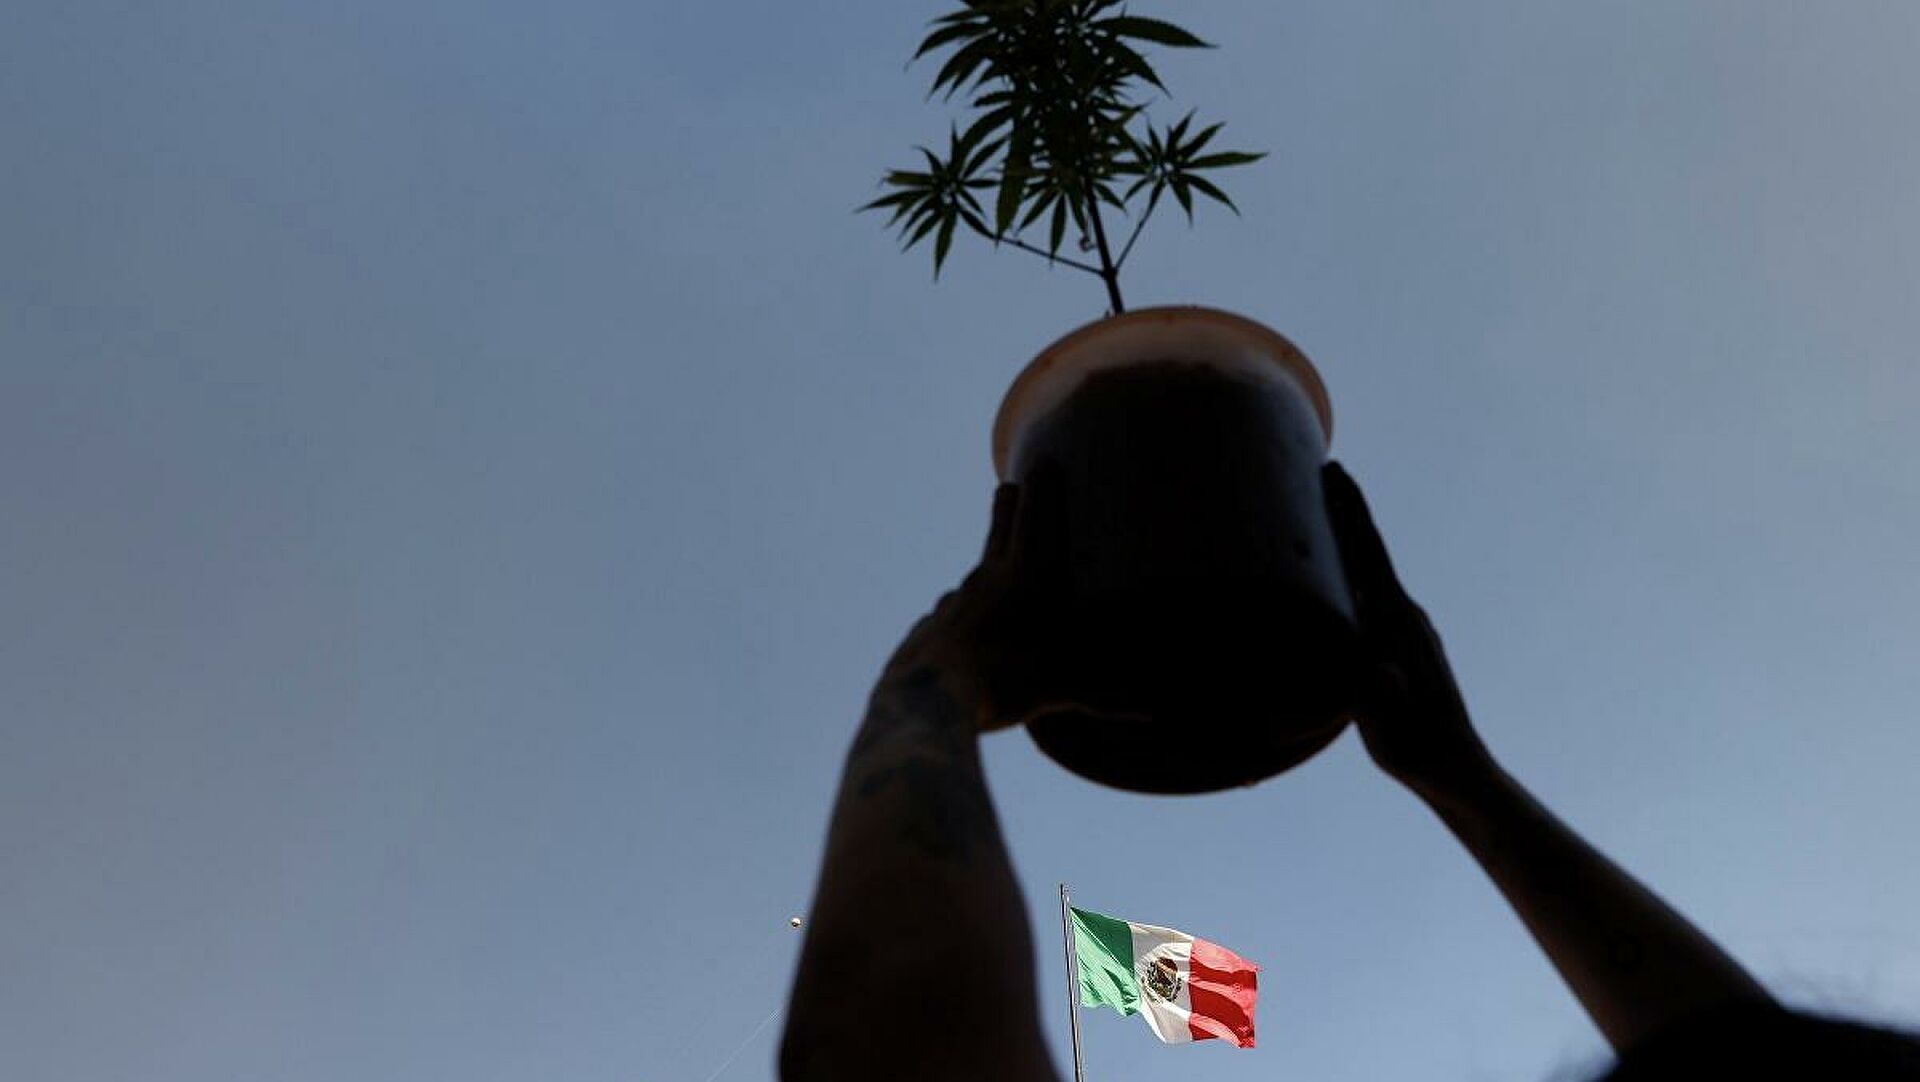  México legaliza la marihuana entre críticas de expertos y asociaciones de consumidores